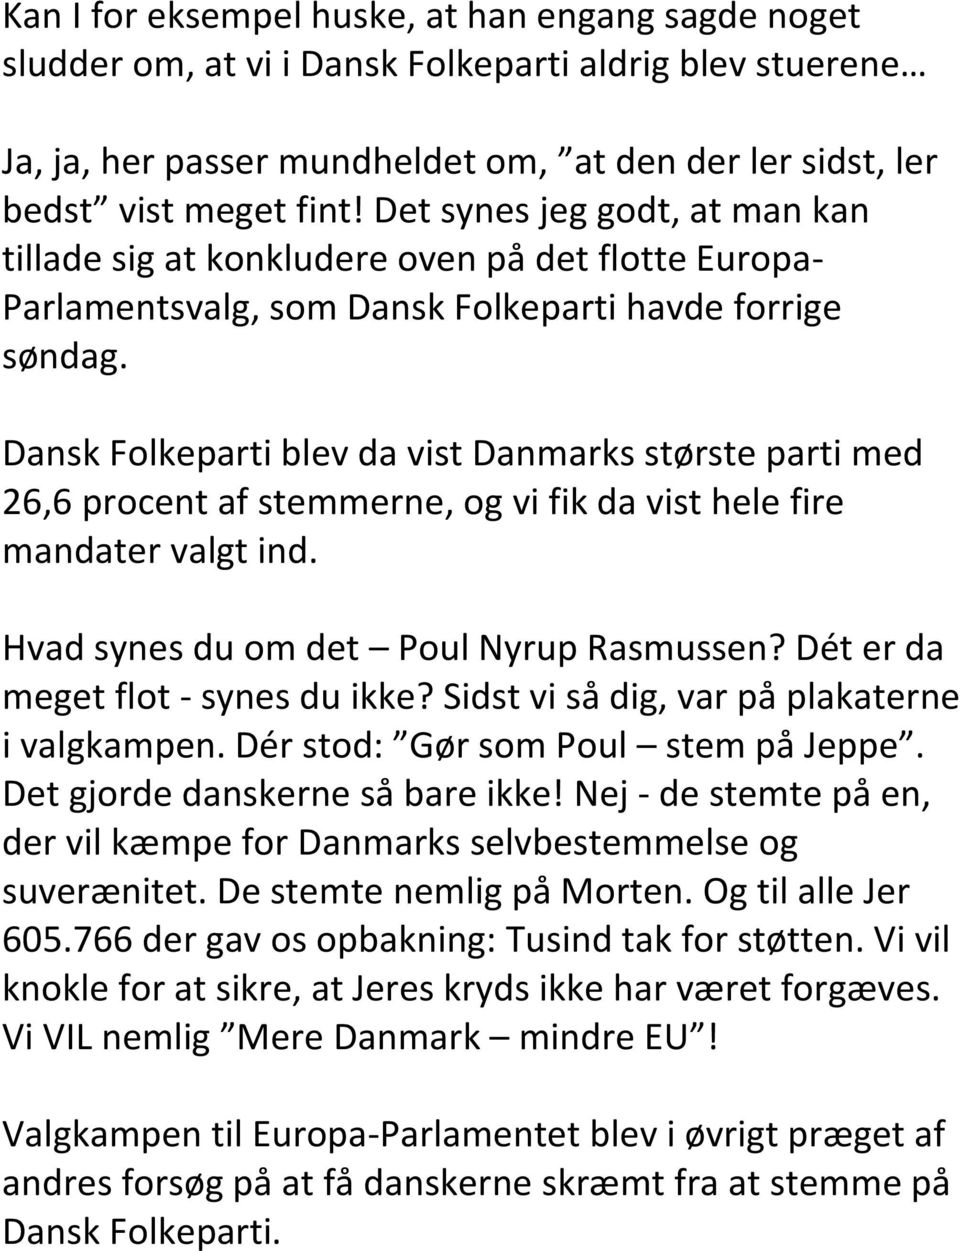 Dansk Folkeparti blev da vist Danmarks største parti med 26,6 procent af stemmerne, og vi fik da vist hele fire mandater valgt ind. Hvad synes du om det Poul Nyrup Rasmussen?